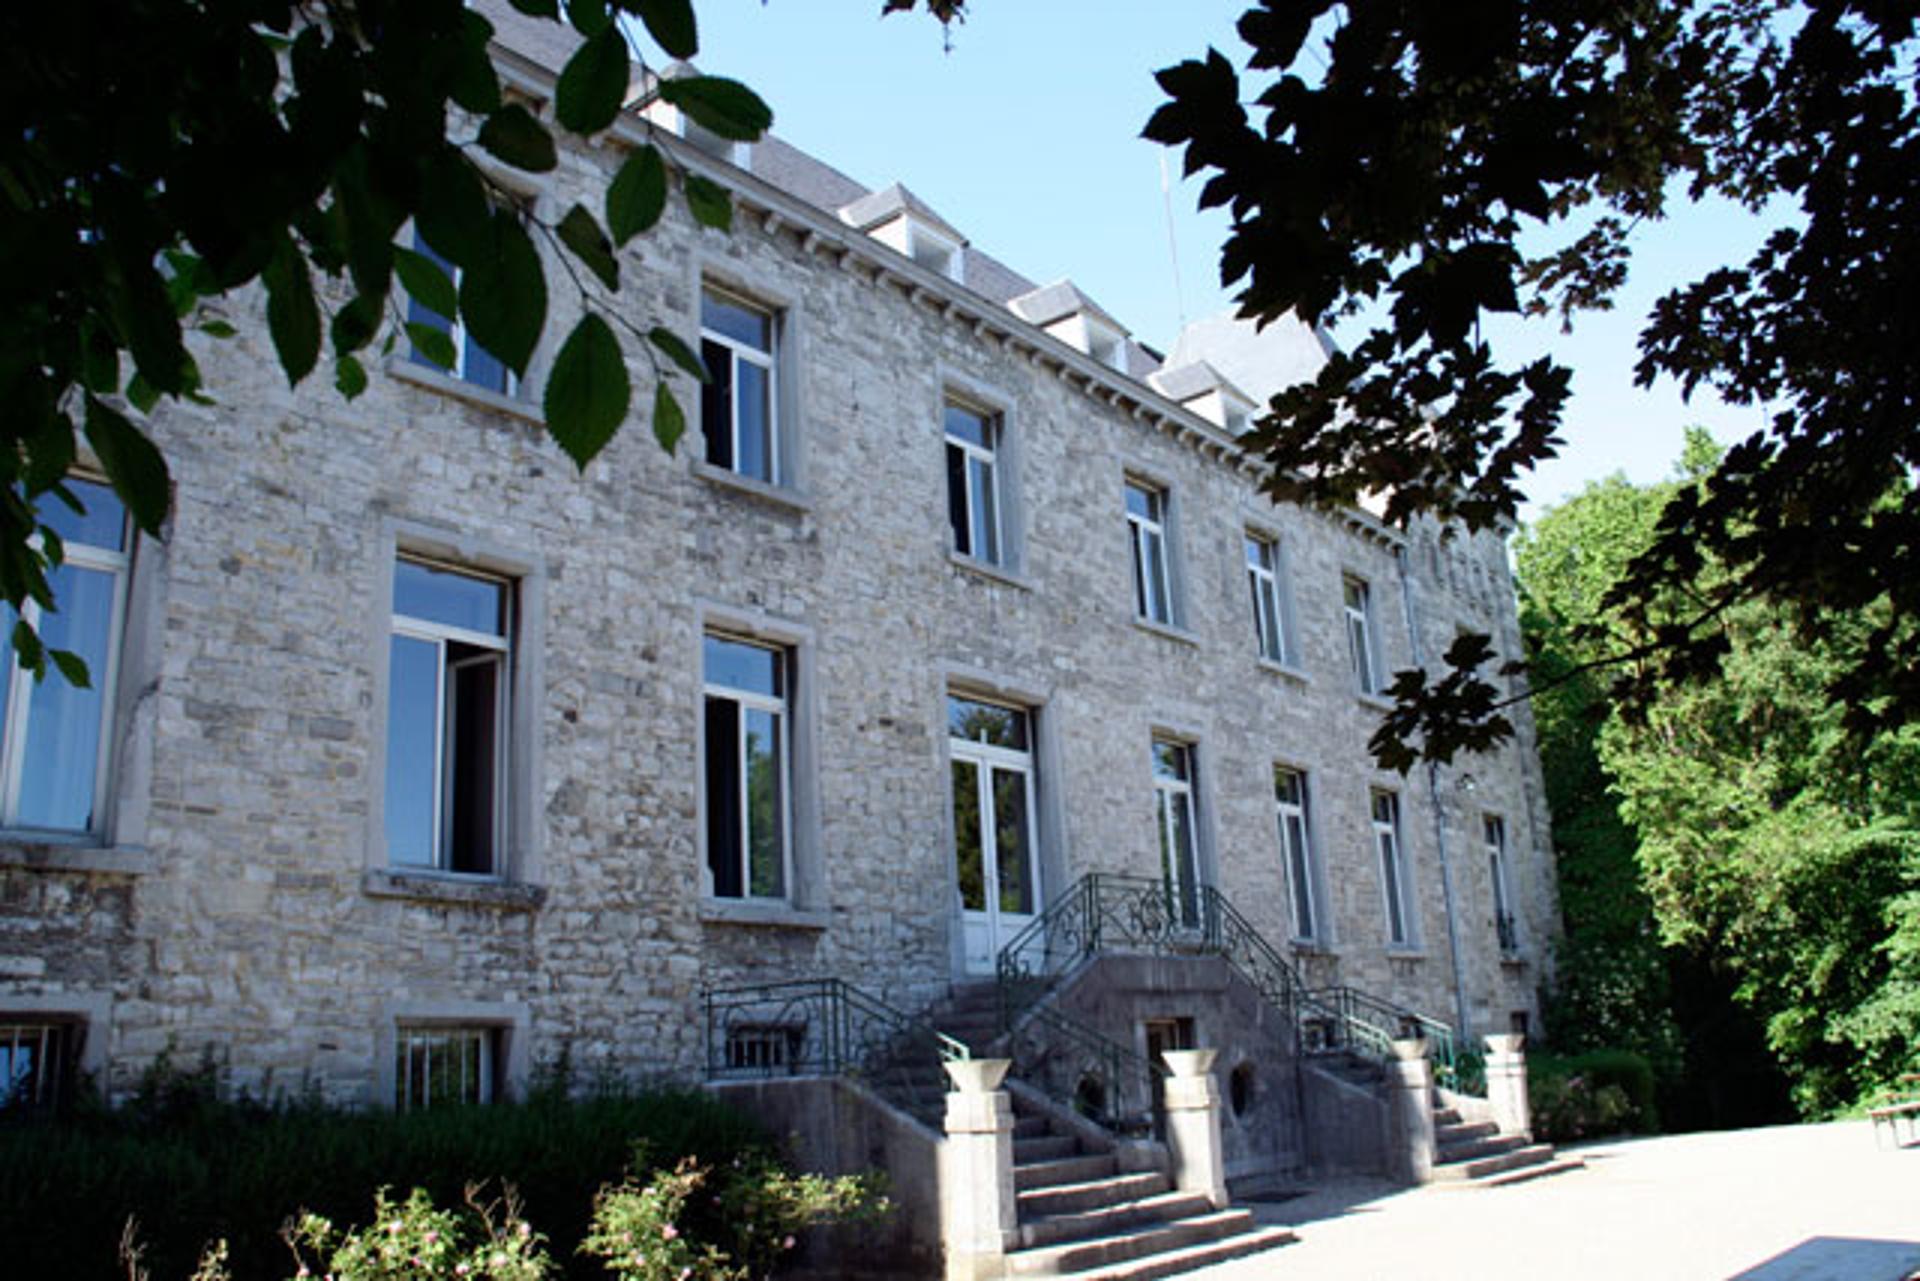 Domaine-mozet-facade